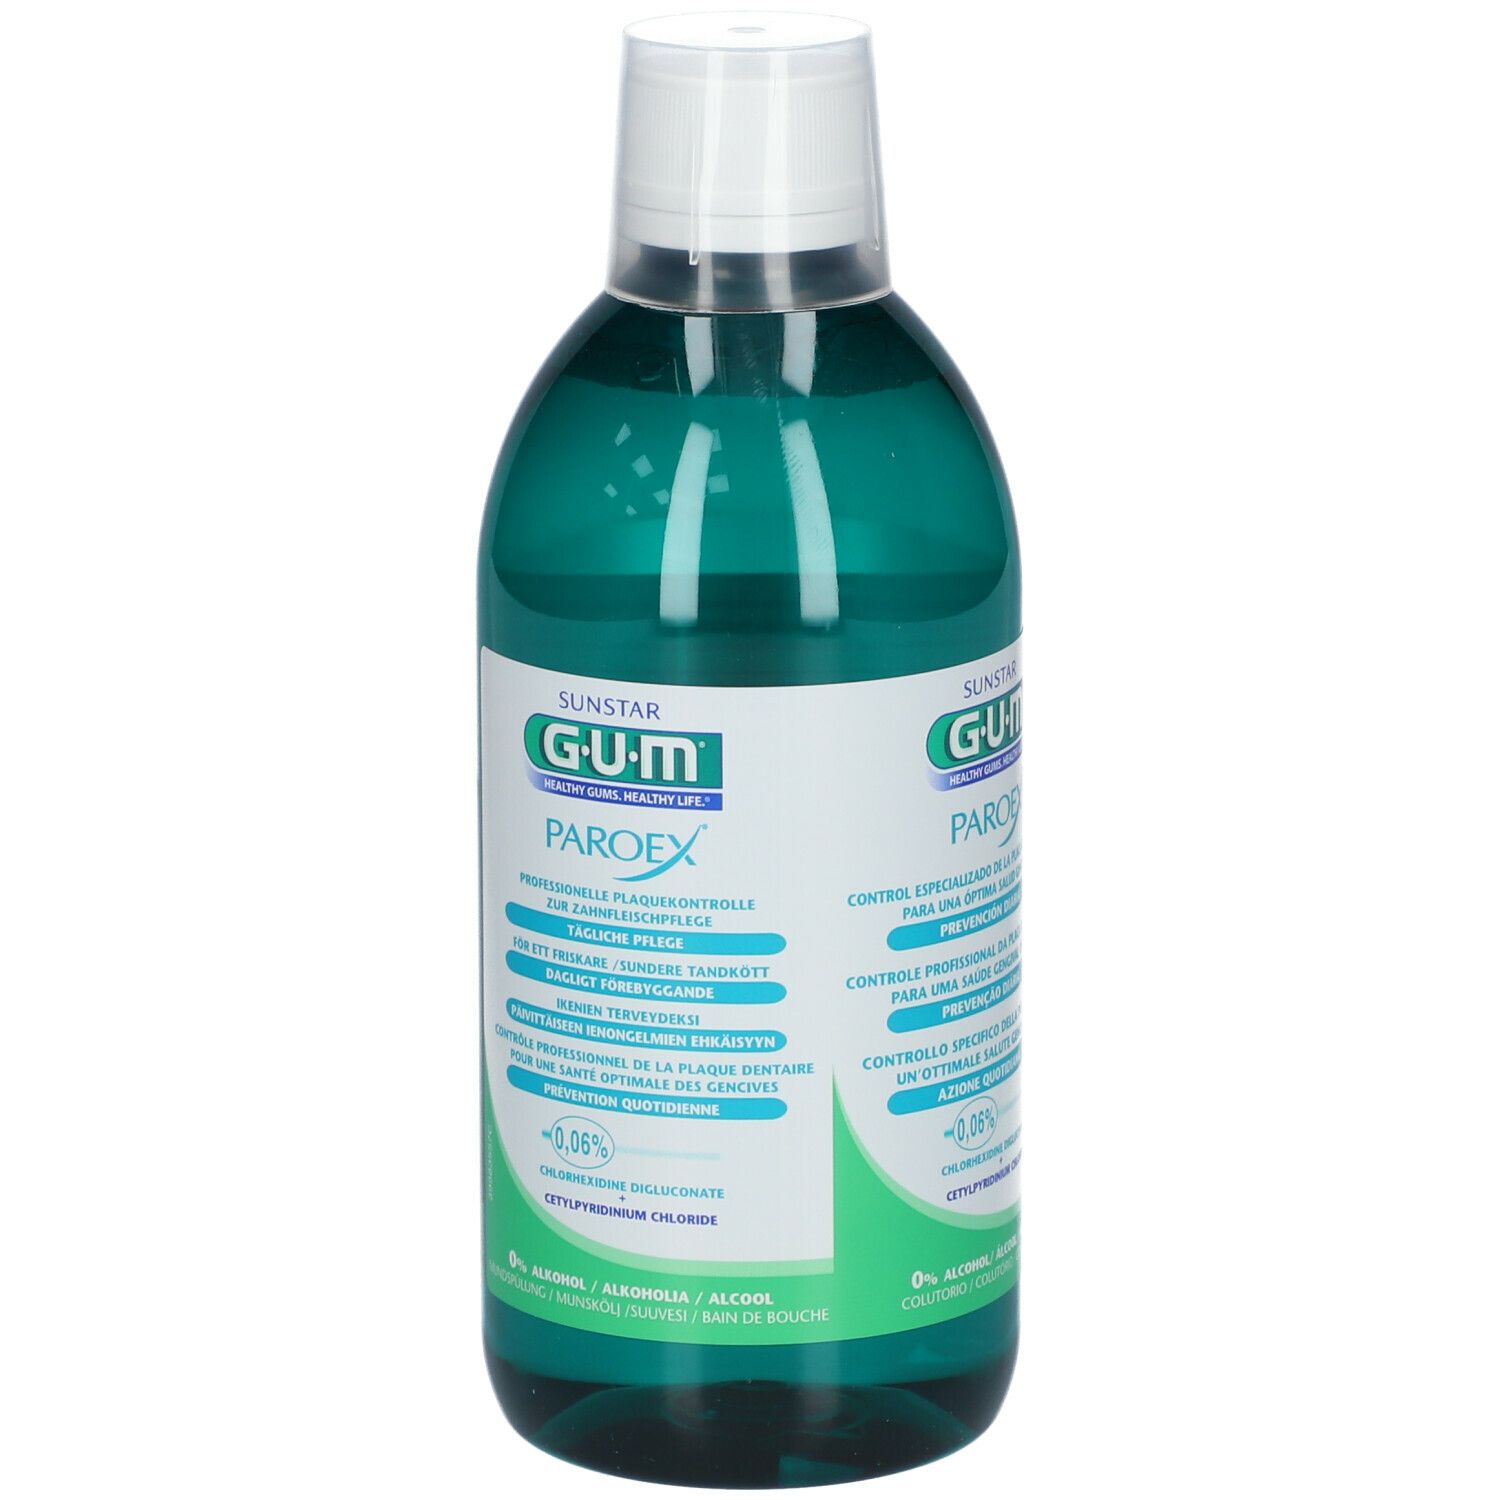 GUM® Paroex Bain de bouche 0,06 %